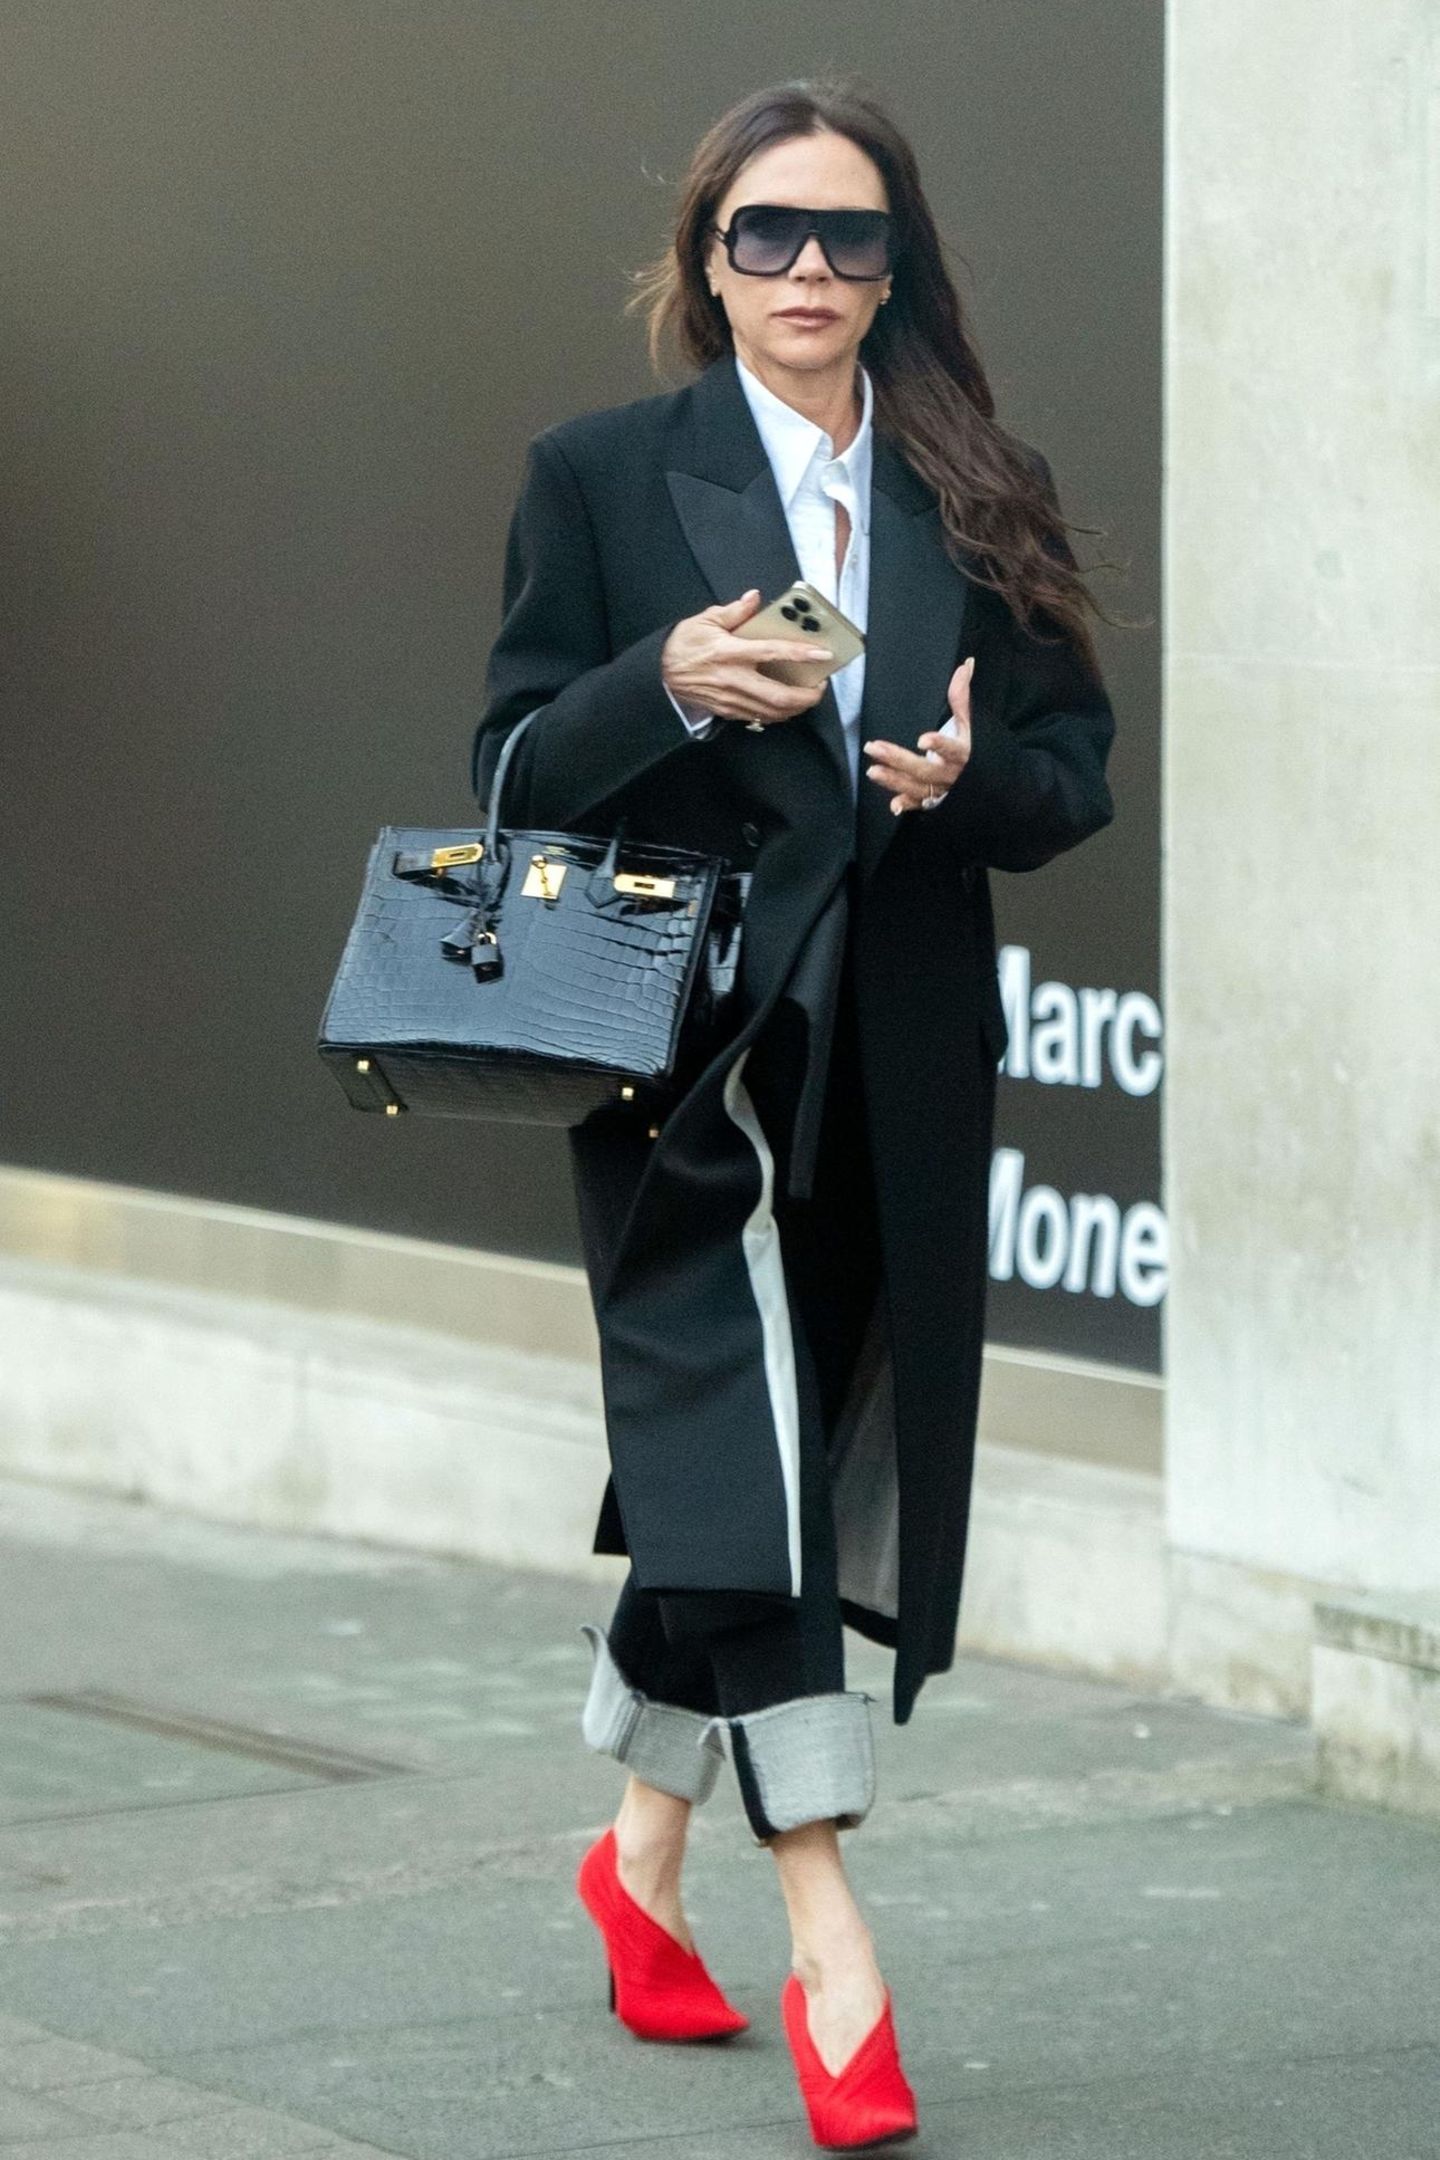 Victoria Beckham bleibt mit diesem Look in ihrer gewohnten Farbfamilie und setzt auf Wollmantel und weißes Hemd. Knallrote Heels mit graphischem Absatz verleihen dem Look der Designerin eine edgy, aber dennoch sexy Komponente.